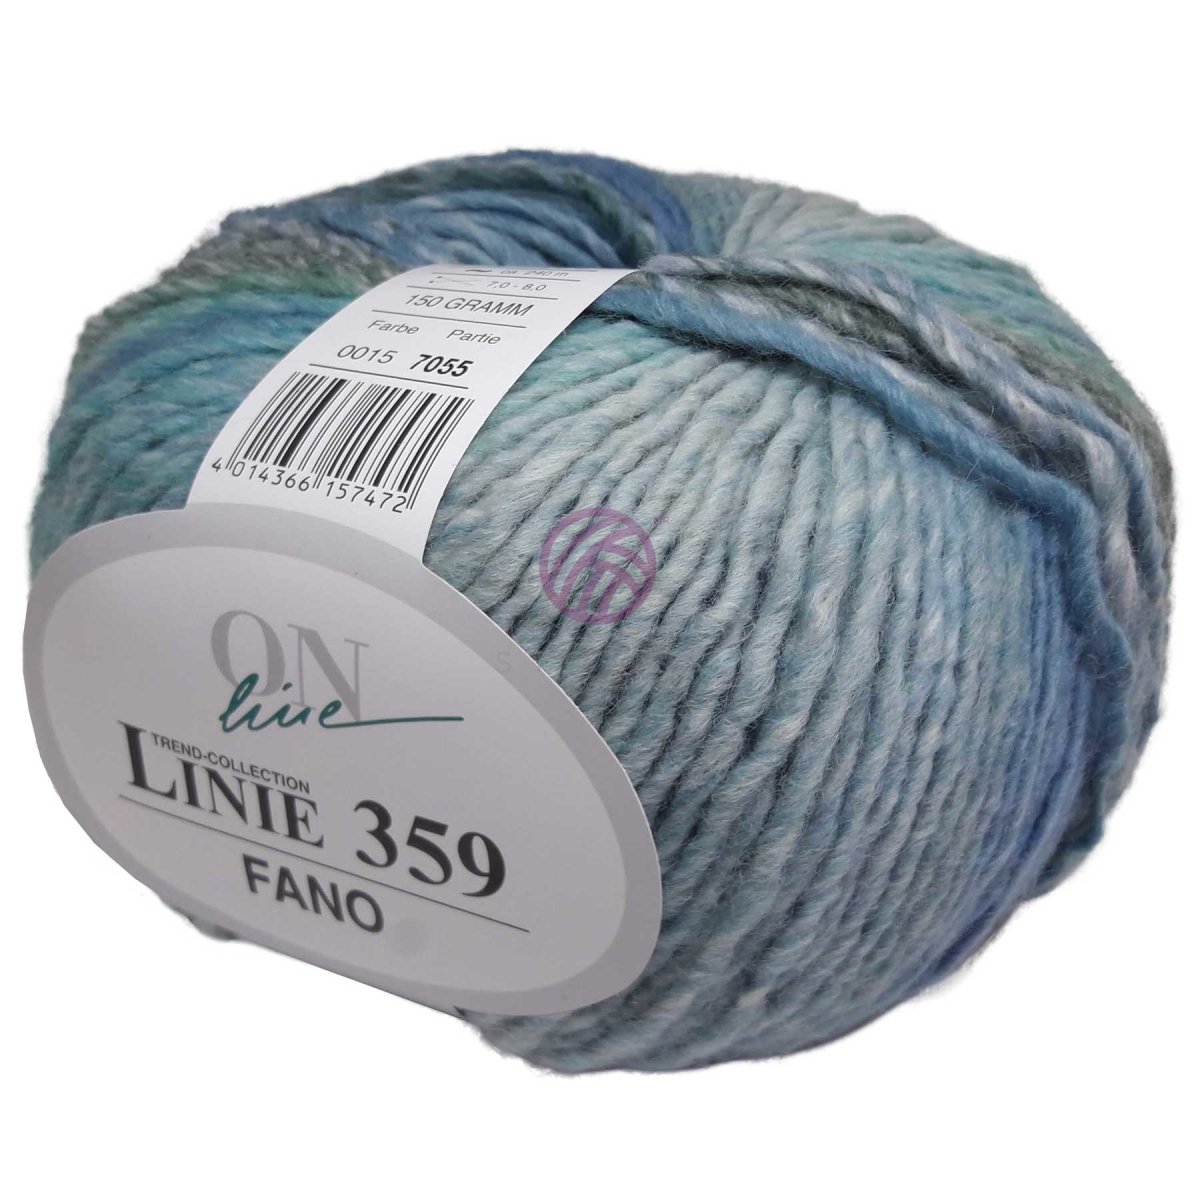 FANO - Crochetstores110359-0154014366157472